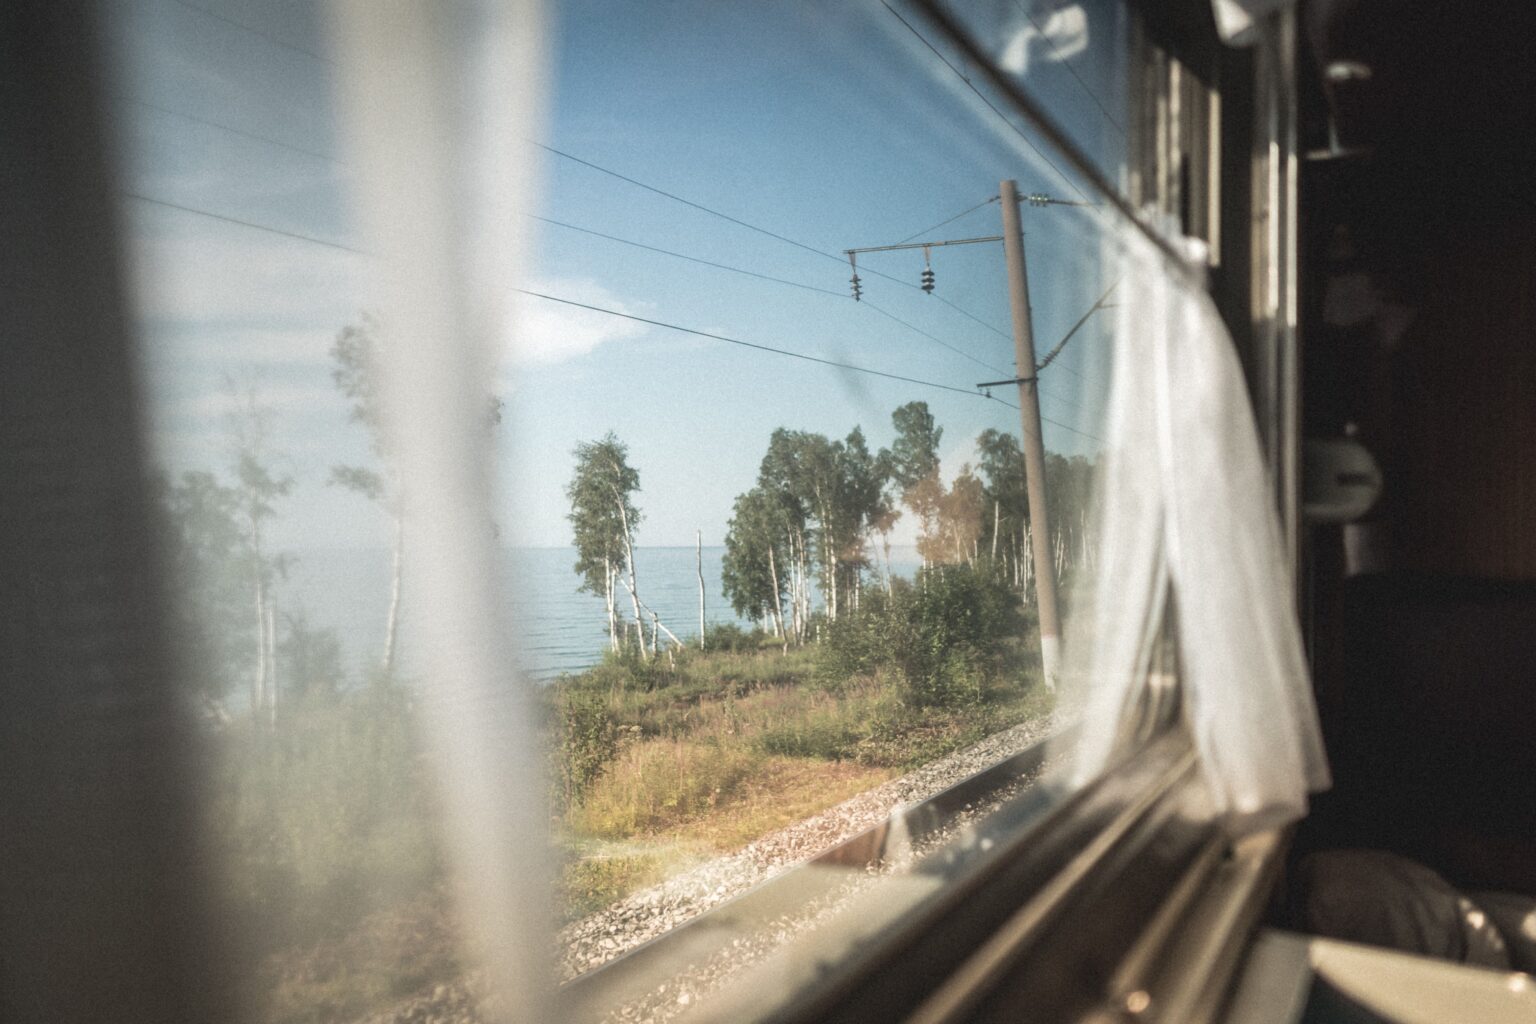 фото из окна поезда зимой